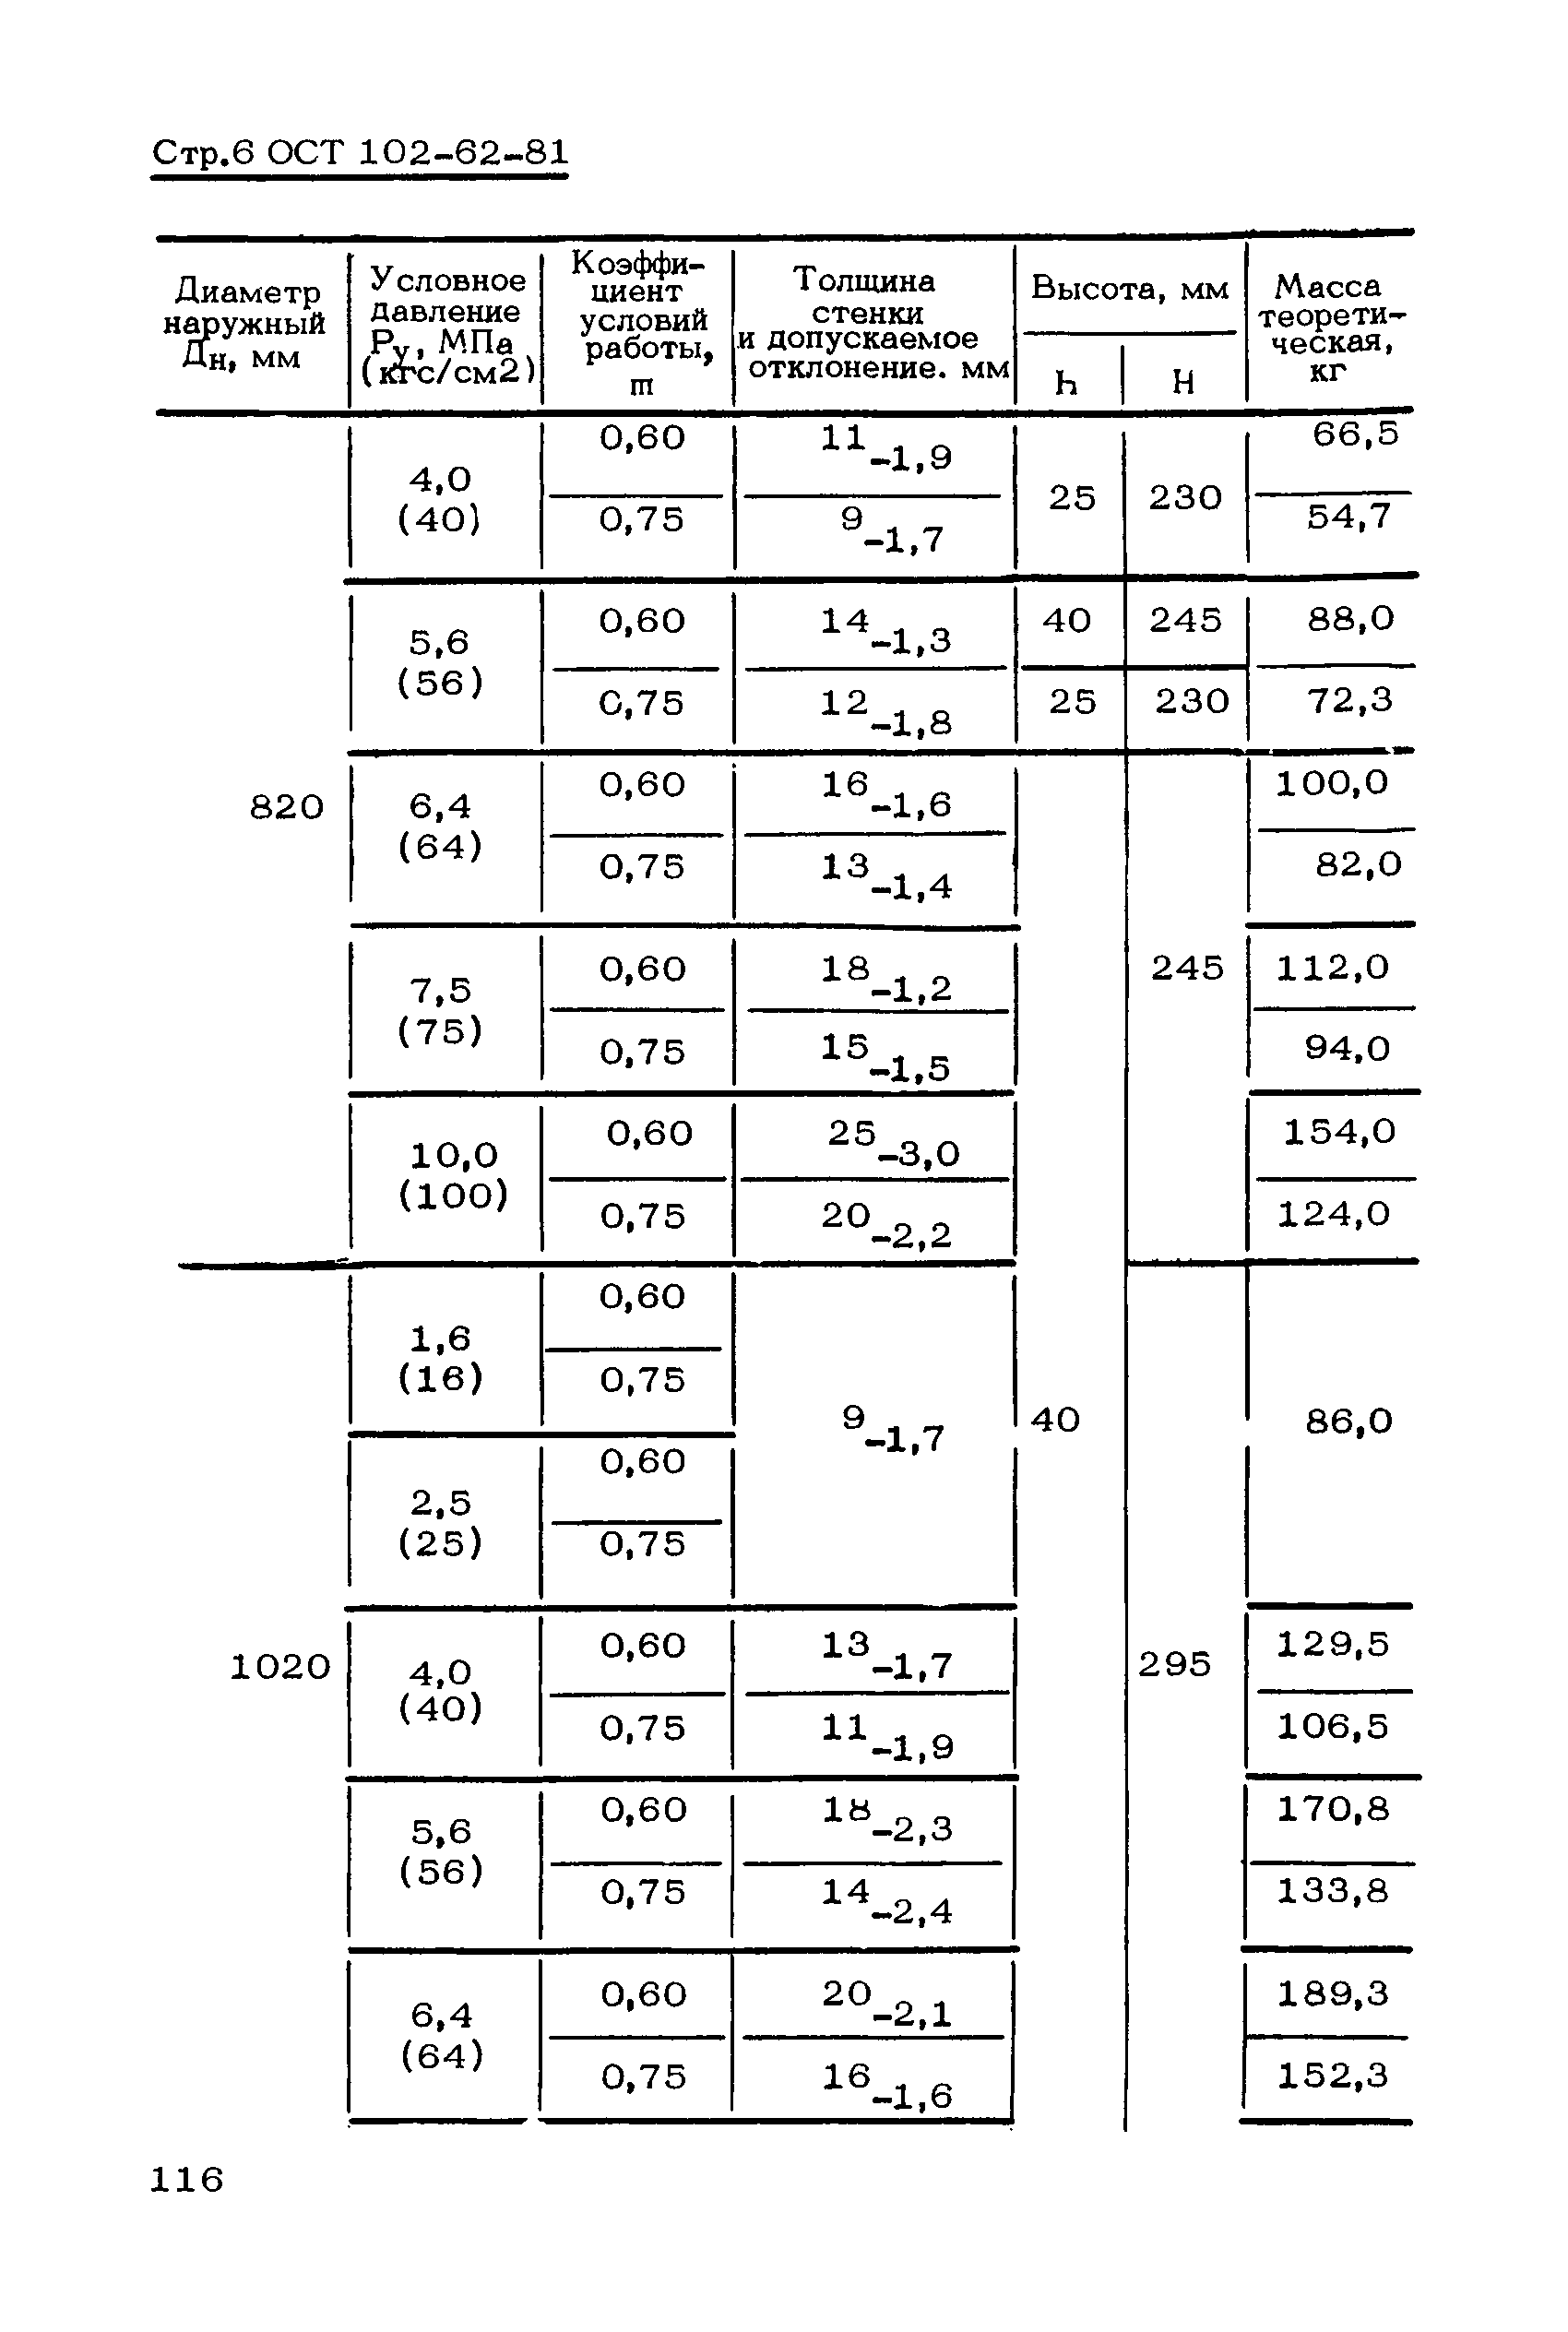 ОСТ 102-62-81